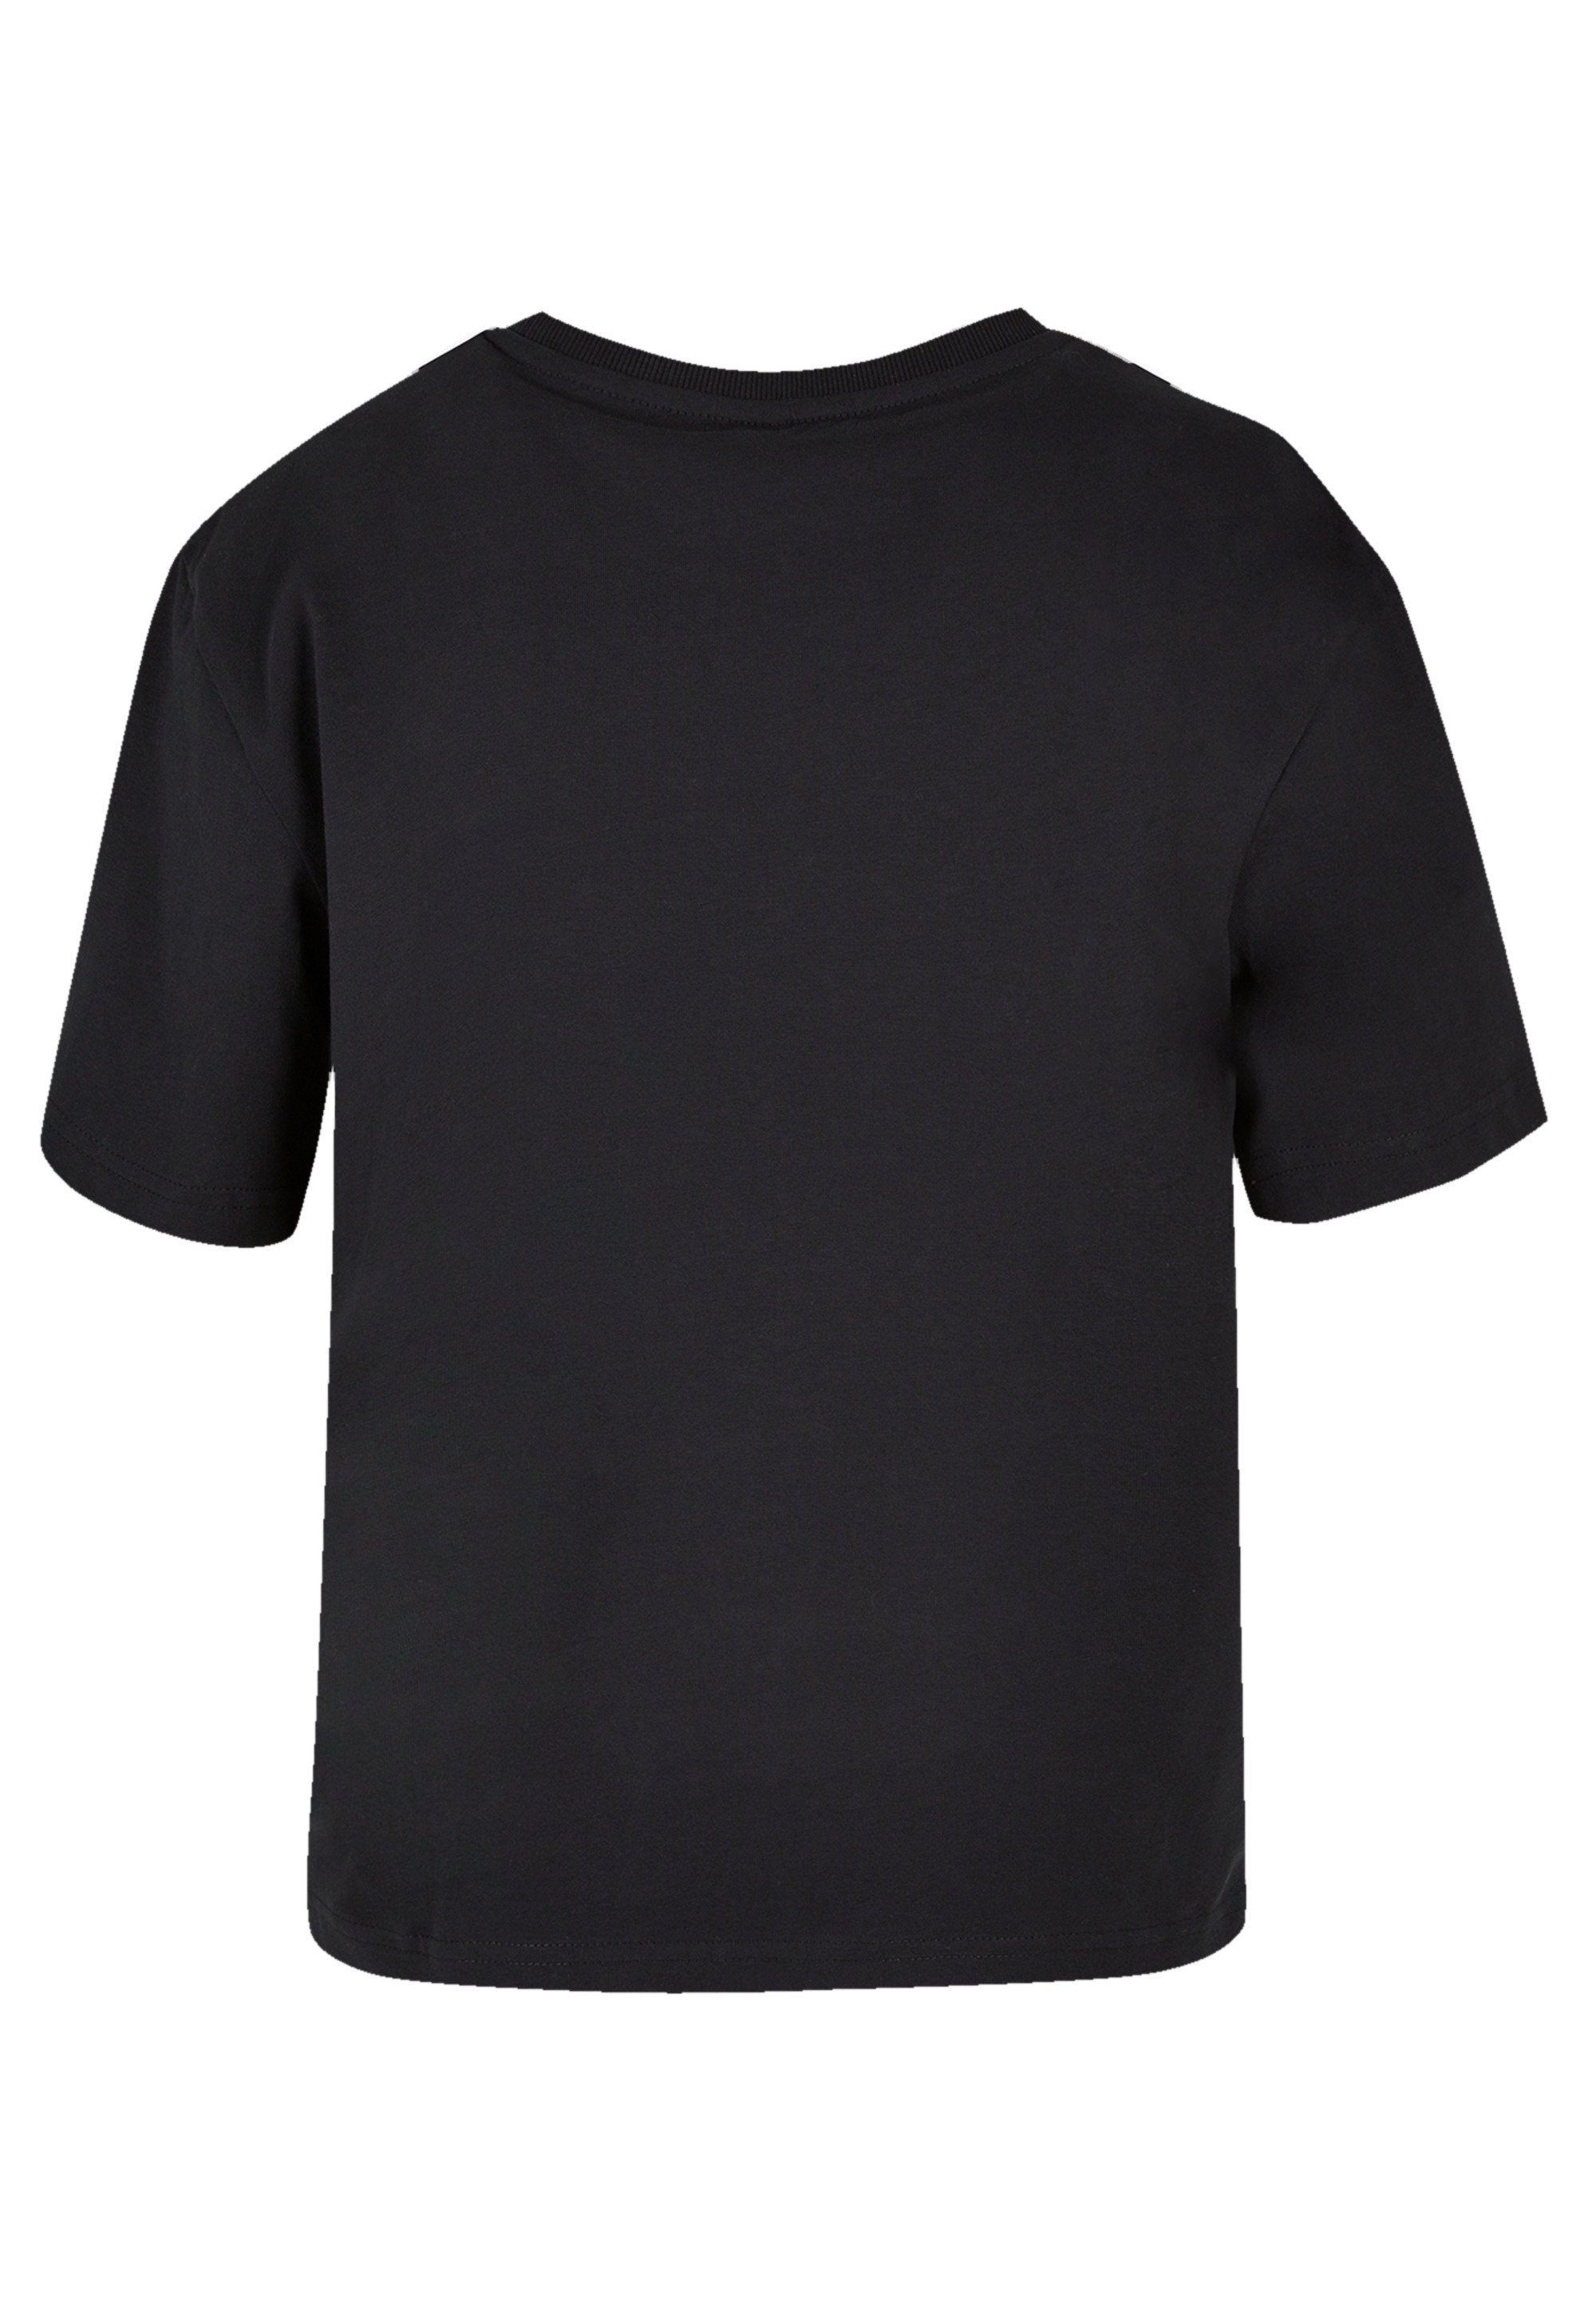 Spirit T-Shirt Qualität, Mulan und kombinierbar F4NT4STIC Premium Disney vielseitig Bold Komfortabel